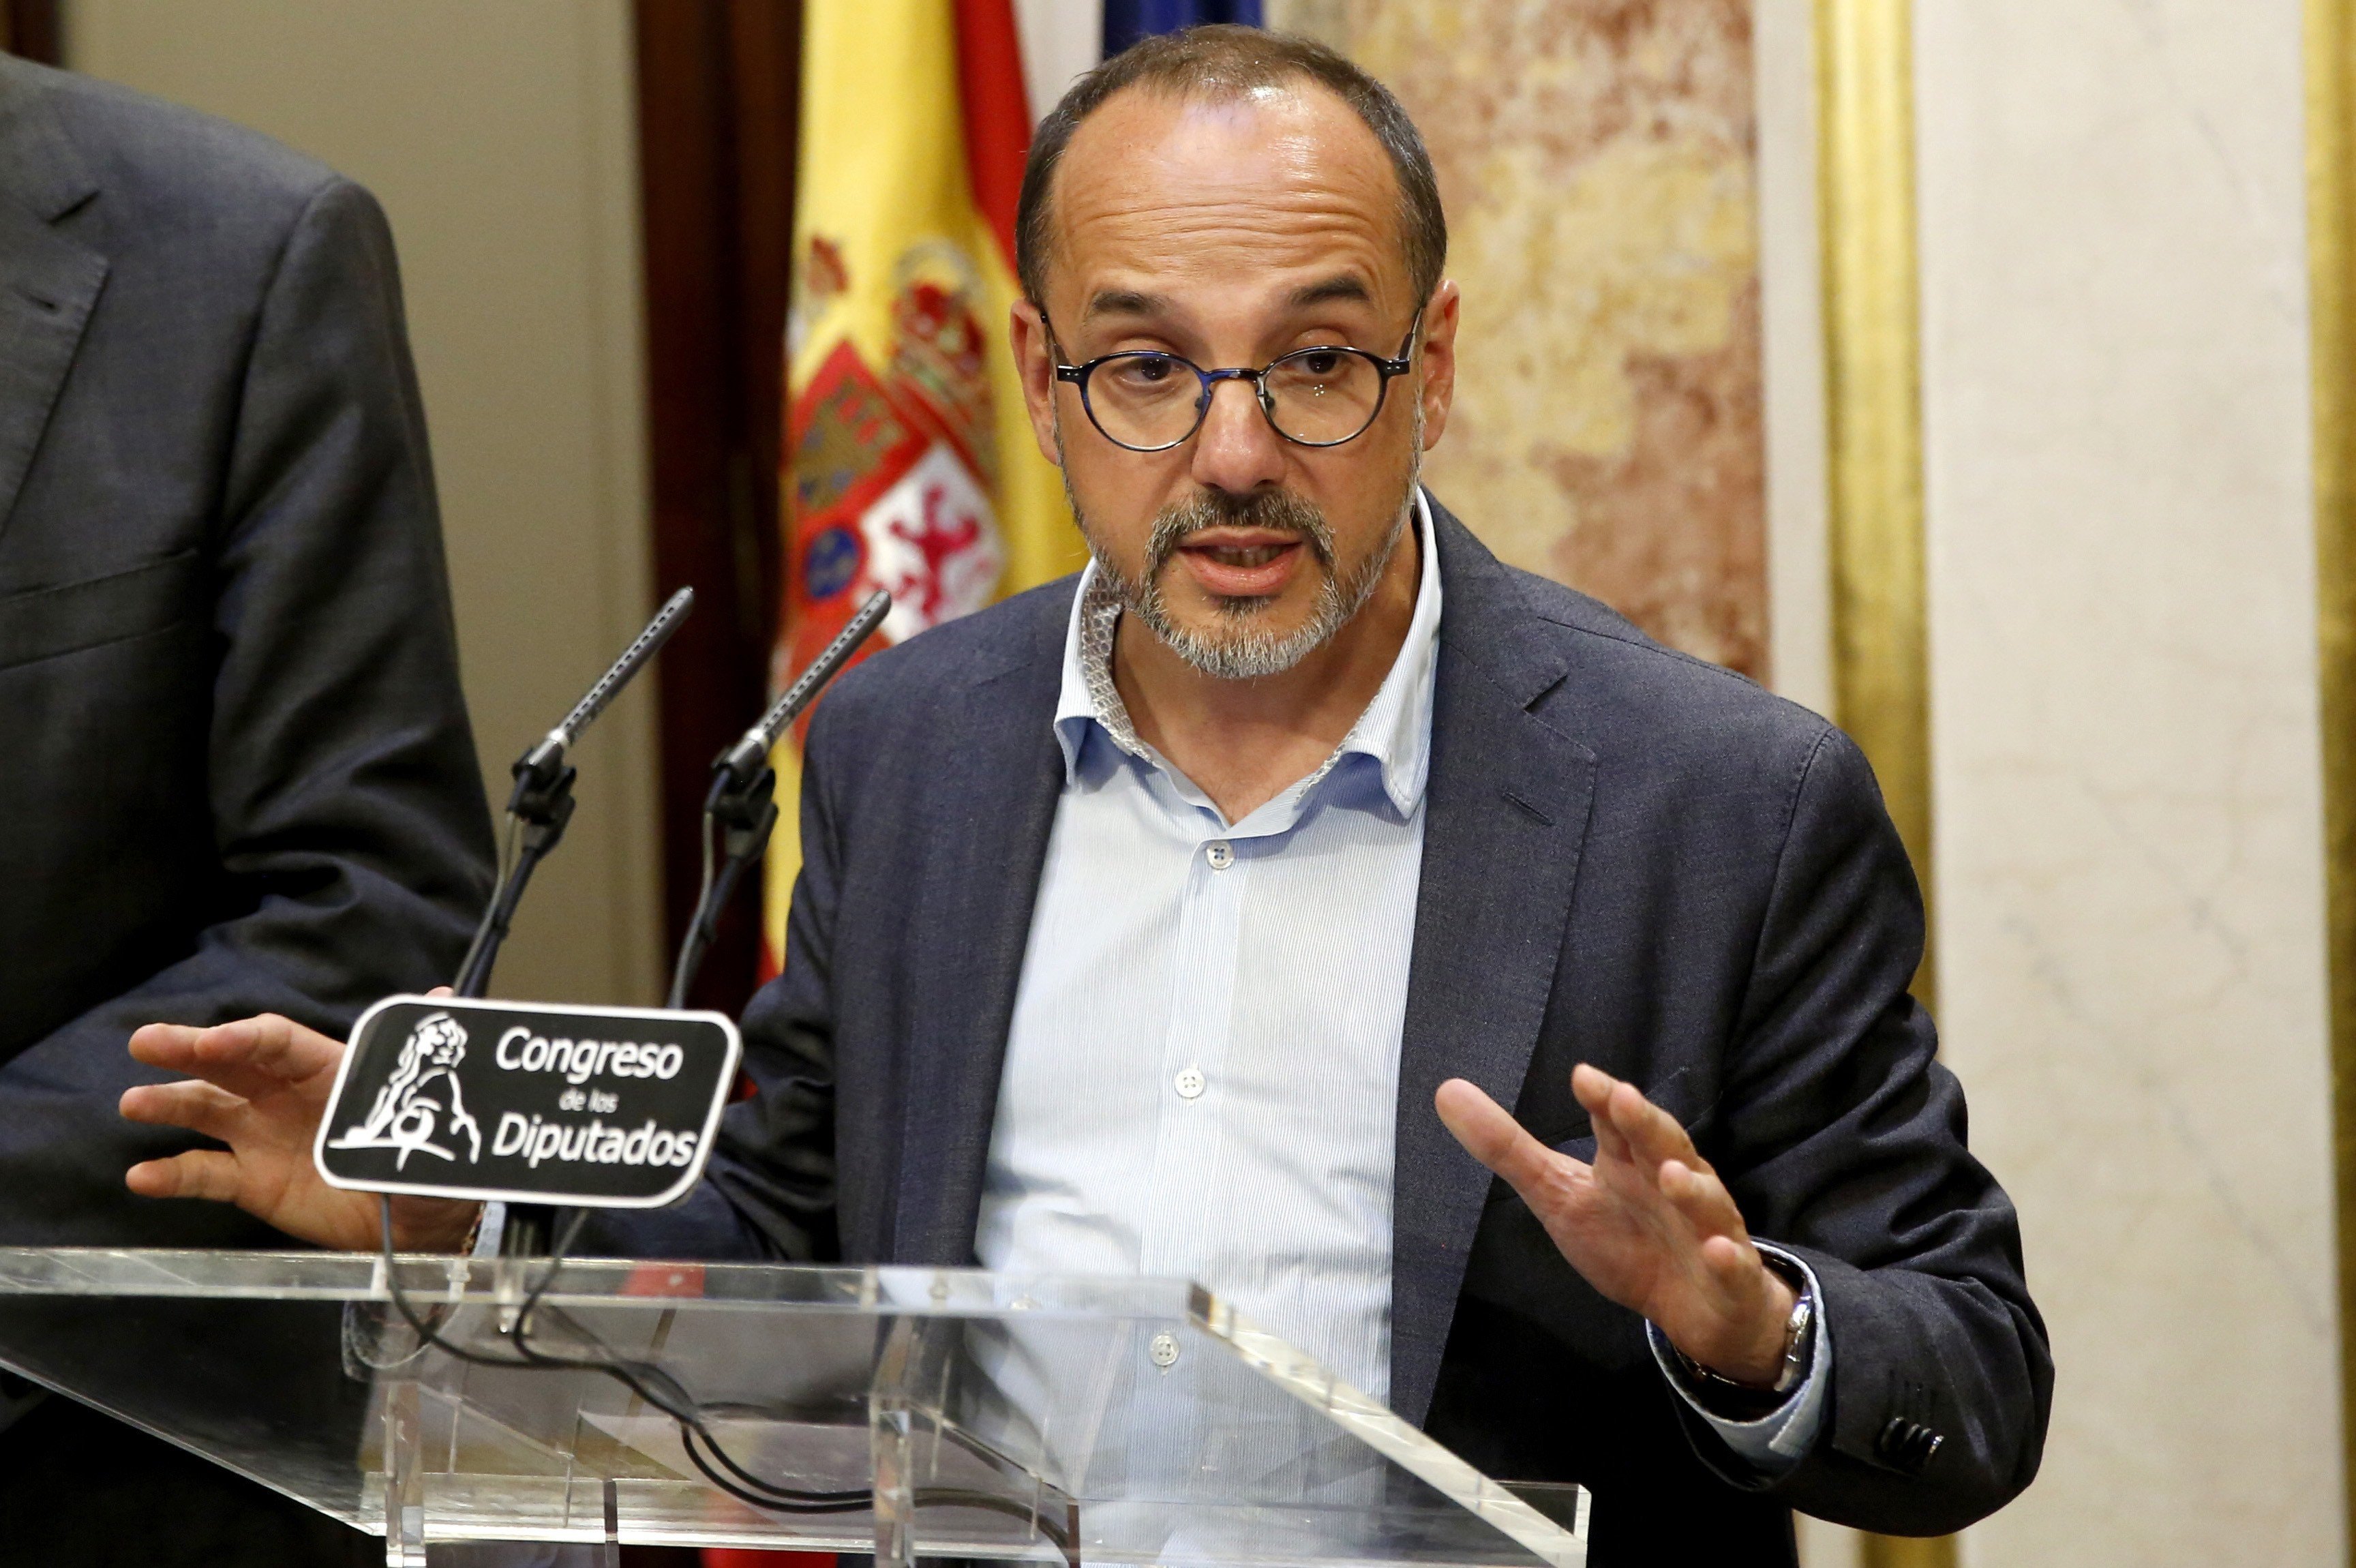 Campuzano adverteix Rajoy que abandoni "l'esperança" de frenar el referèndum